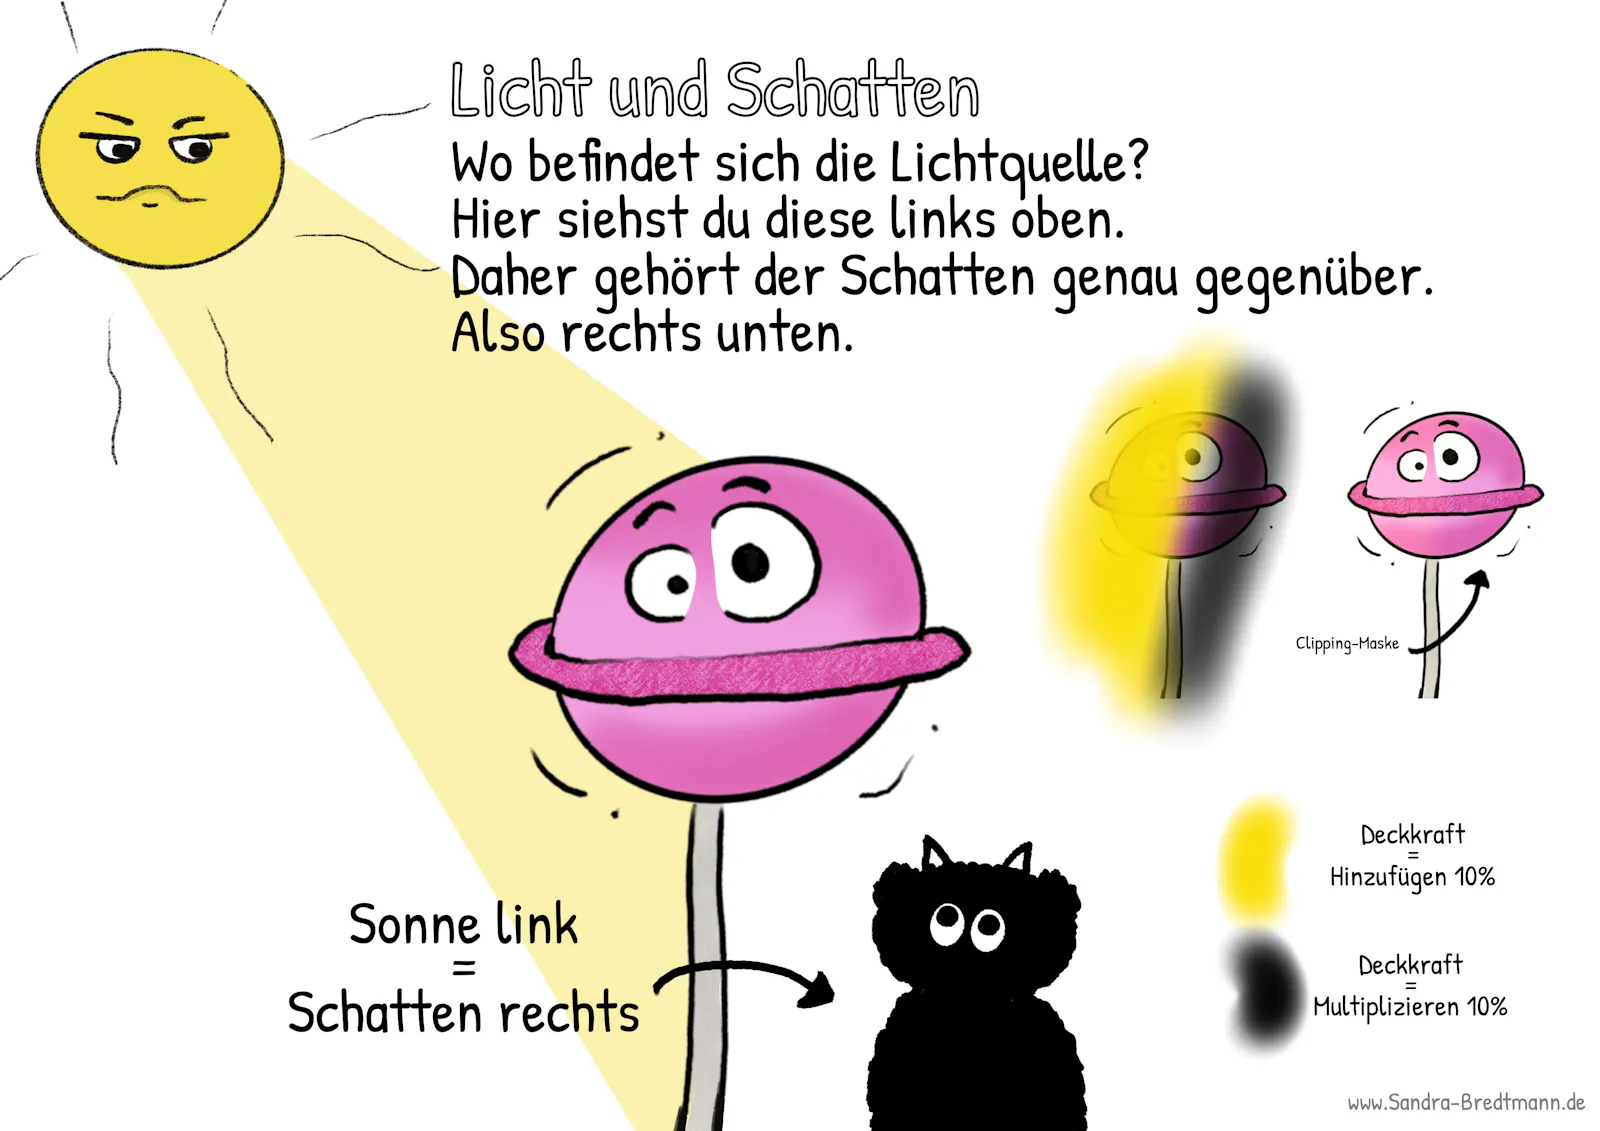 Licht und Schatten ganz einfach erklärt in Procreate von Sandra Bredtmann.